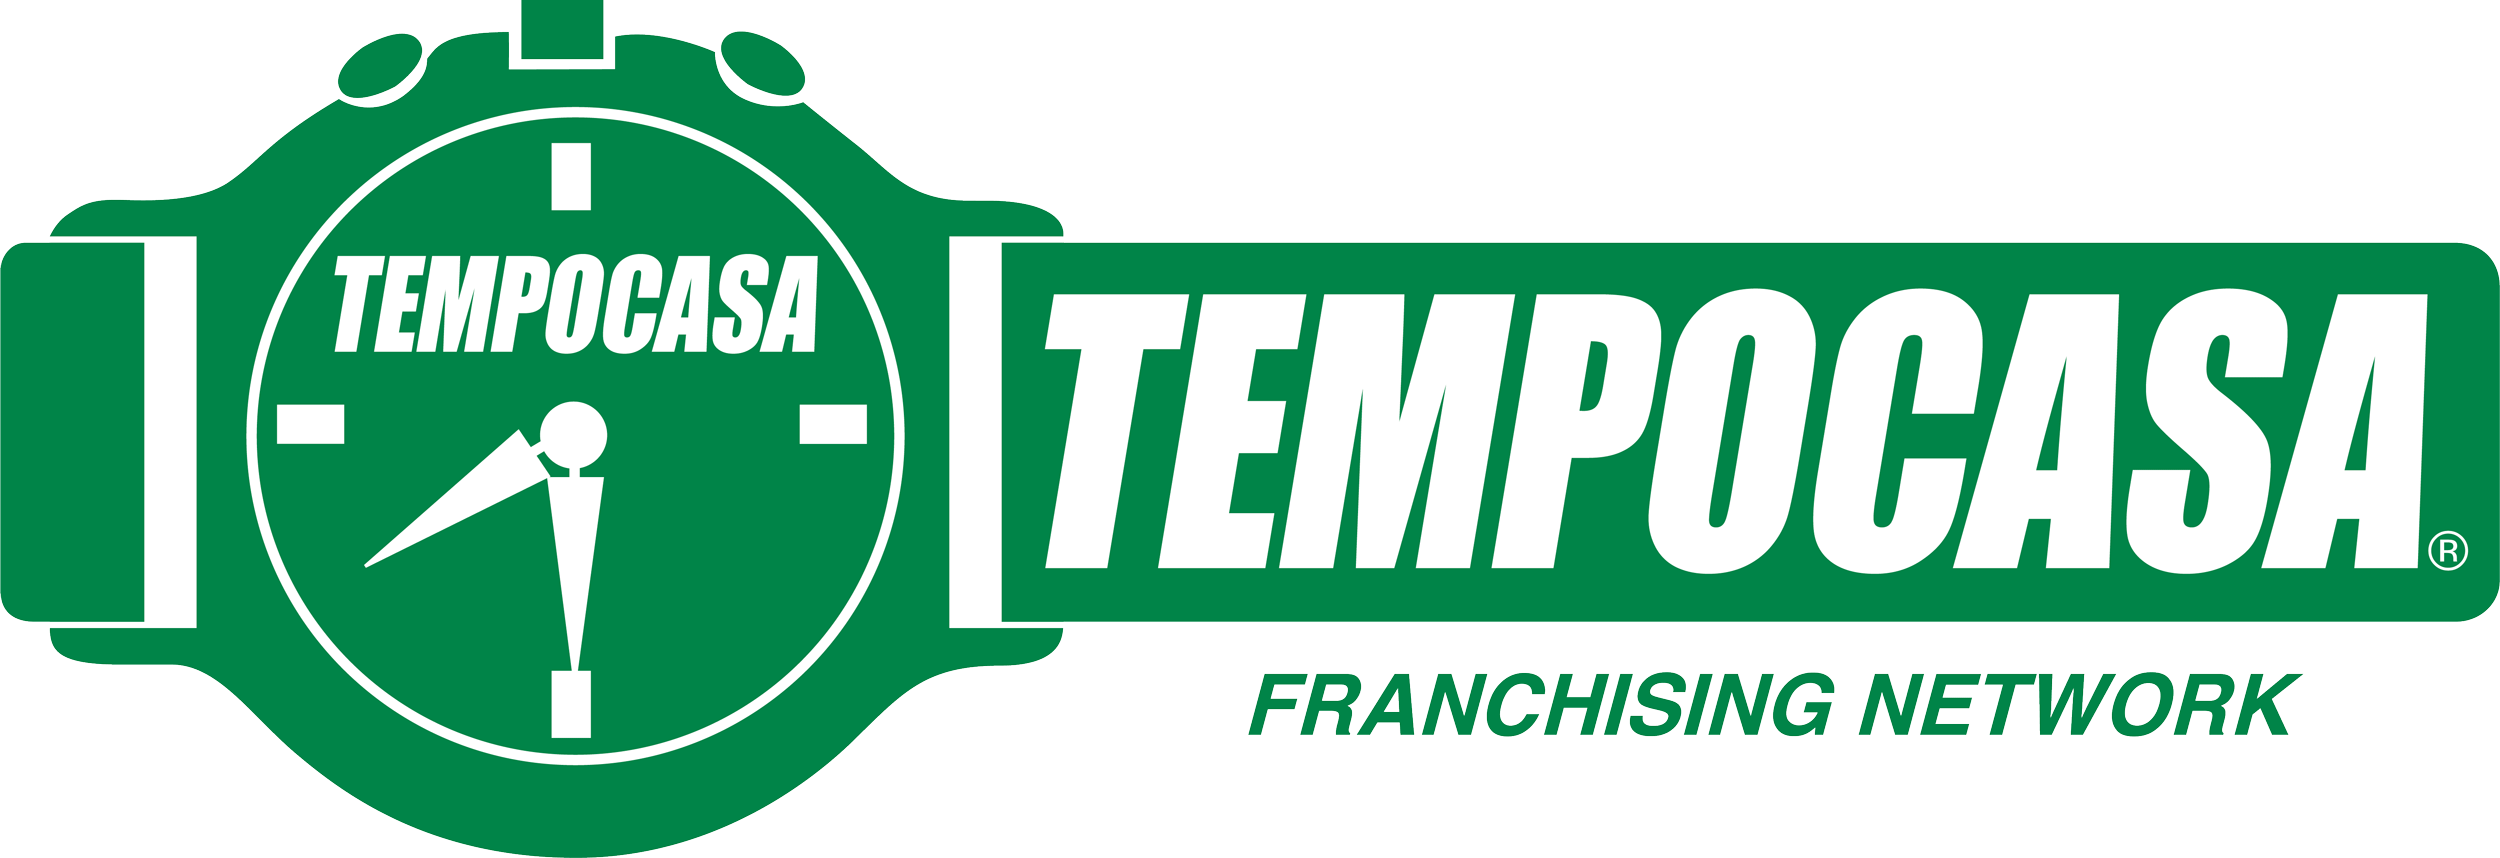 Tempoaffitti - Milano/Argonne - Tempocasa